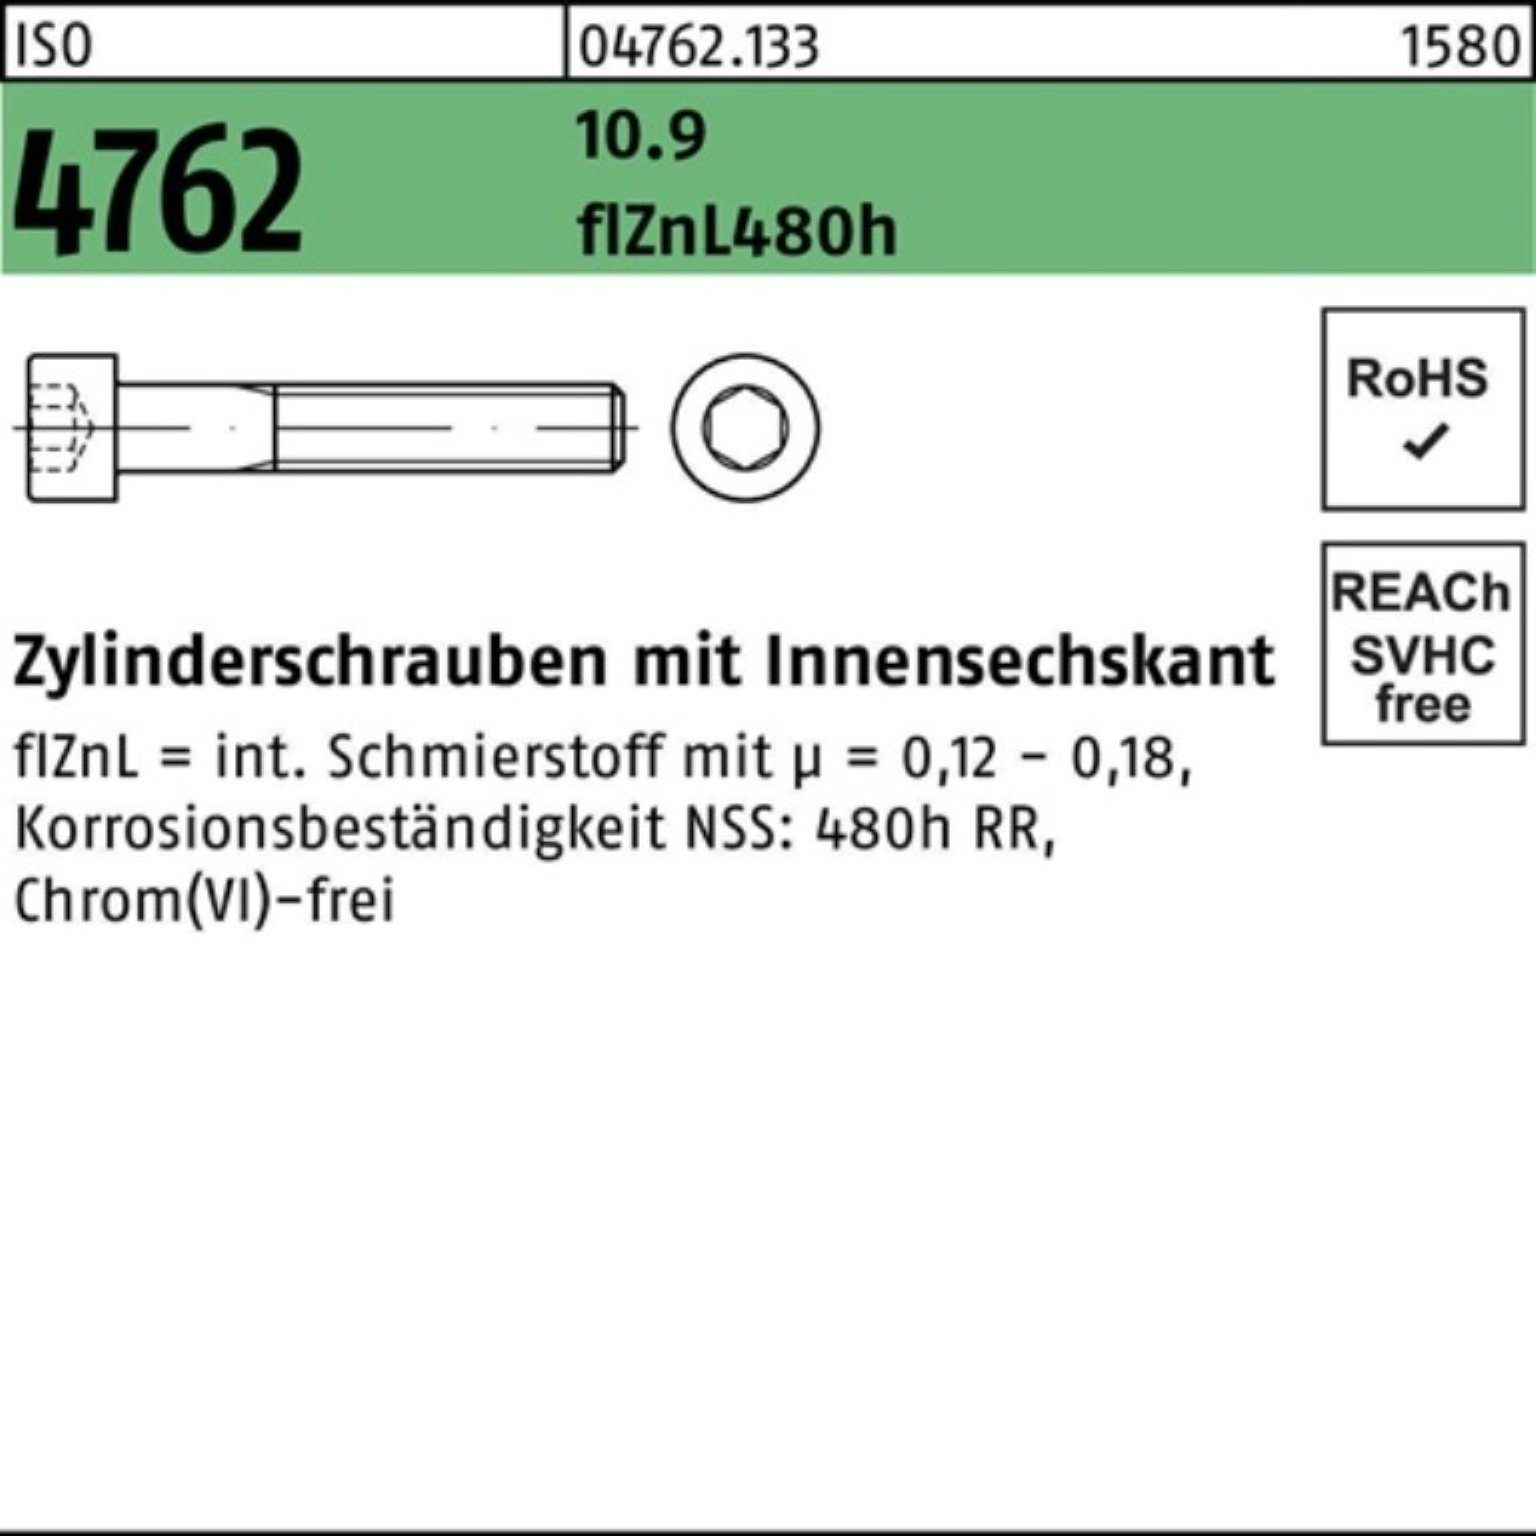 Zylinderschraube Reyher Zylinderschraube M20x75 Innen-6kt 100er 4762 Pack zinklamelle 10.9 ISO